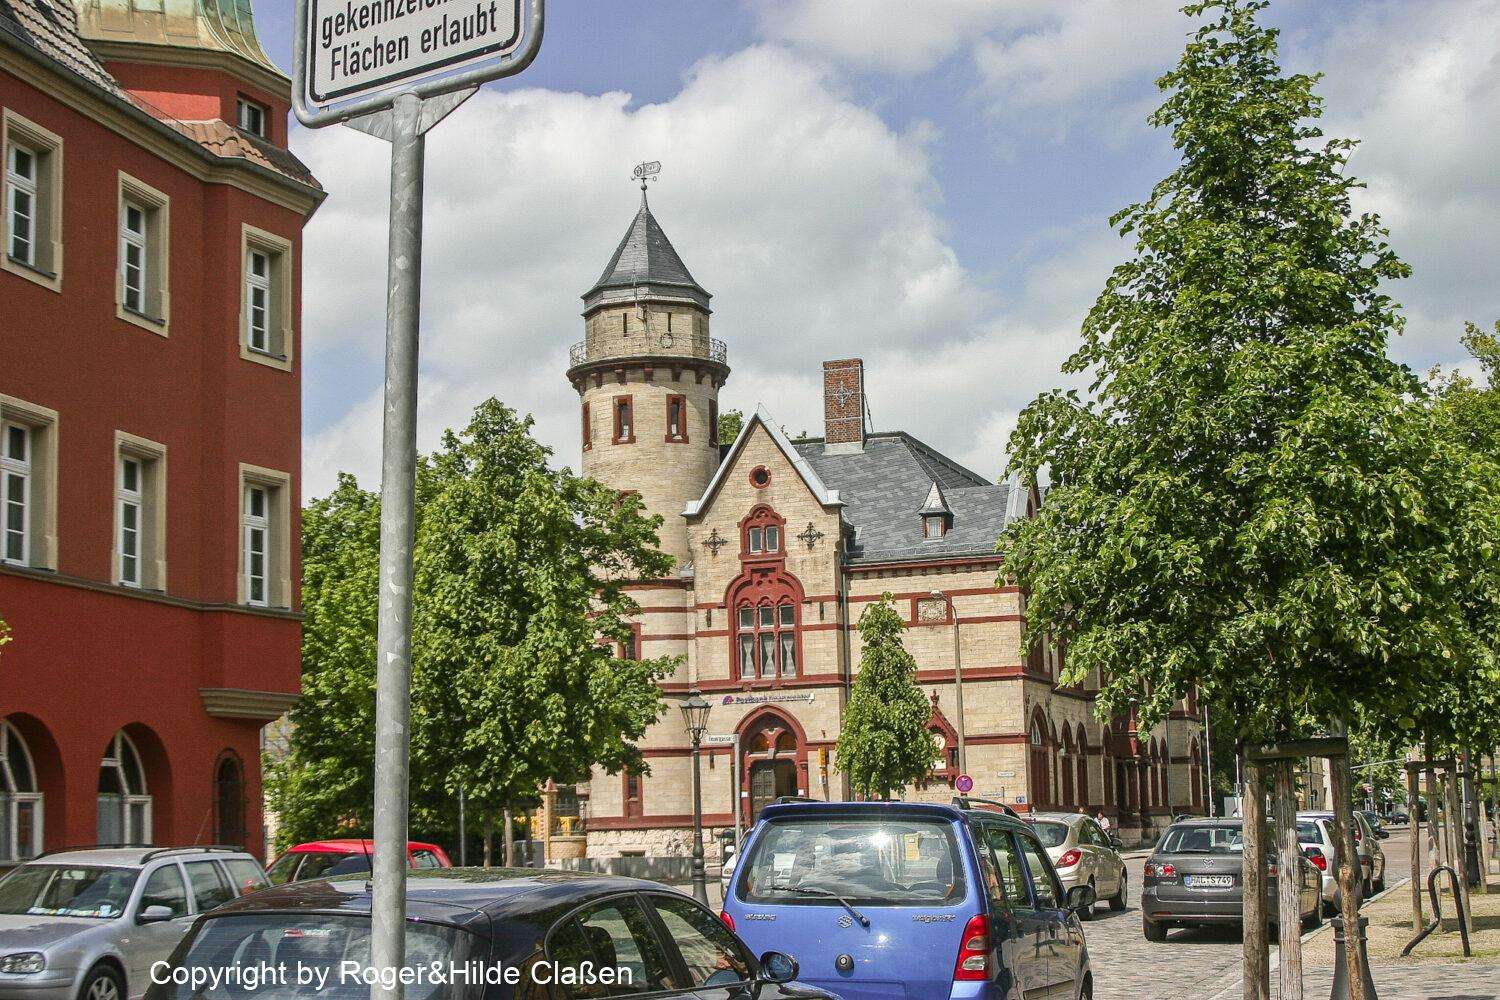 Das Hauptpostamt der Stadt Wittenberg. Dieses beeindruckende Bauwerk wurde 1893 im Stil des Historismus geschaffen. Am Gebäude befindet sich eine Tafel zum Gedenken an den Physikers Wilhelm Weber, der 1804 in Wittenberg geboren wurde.